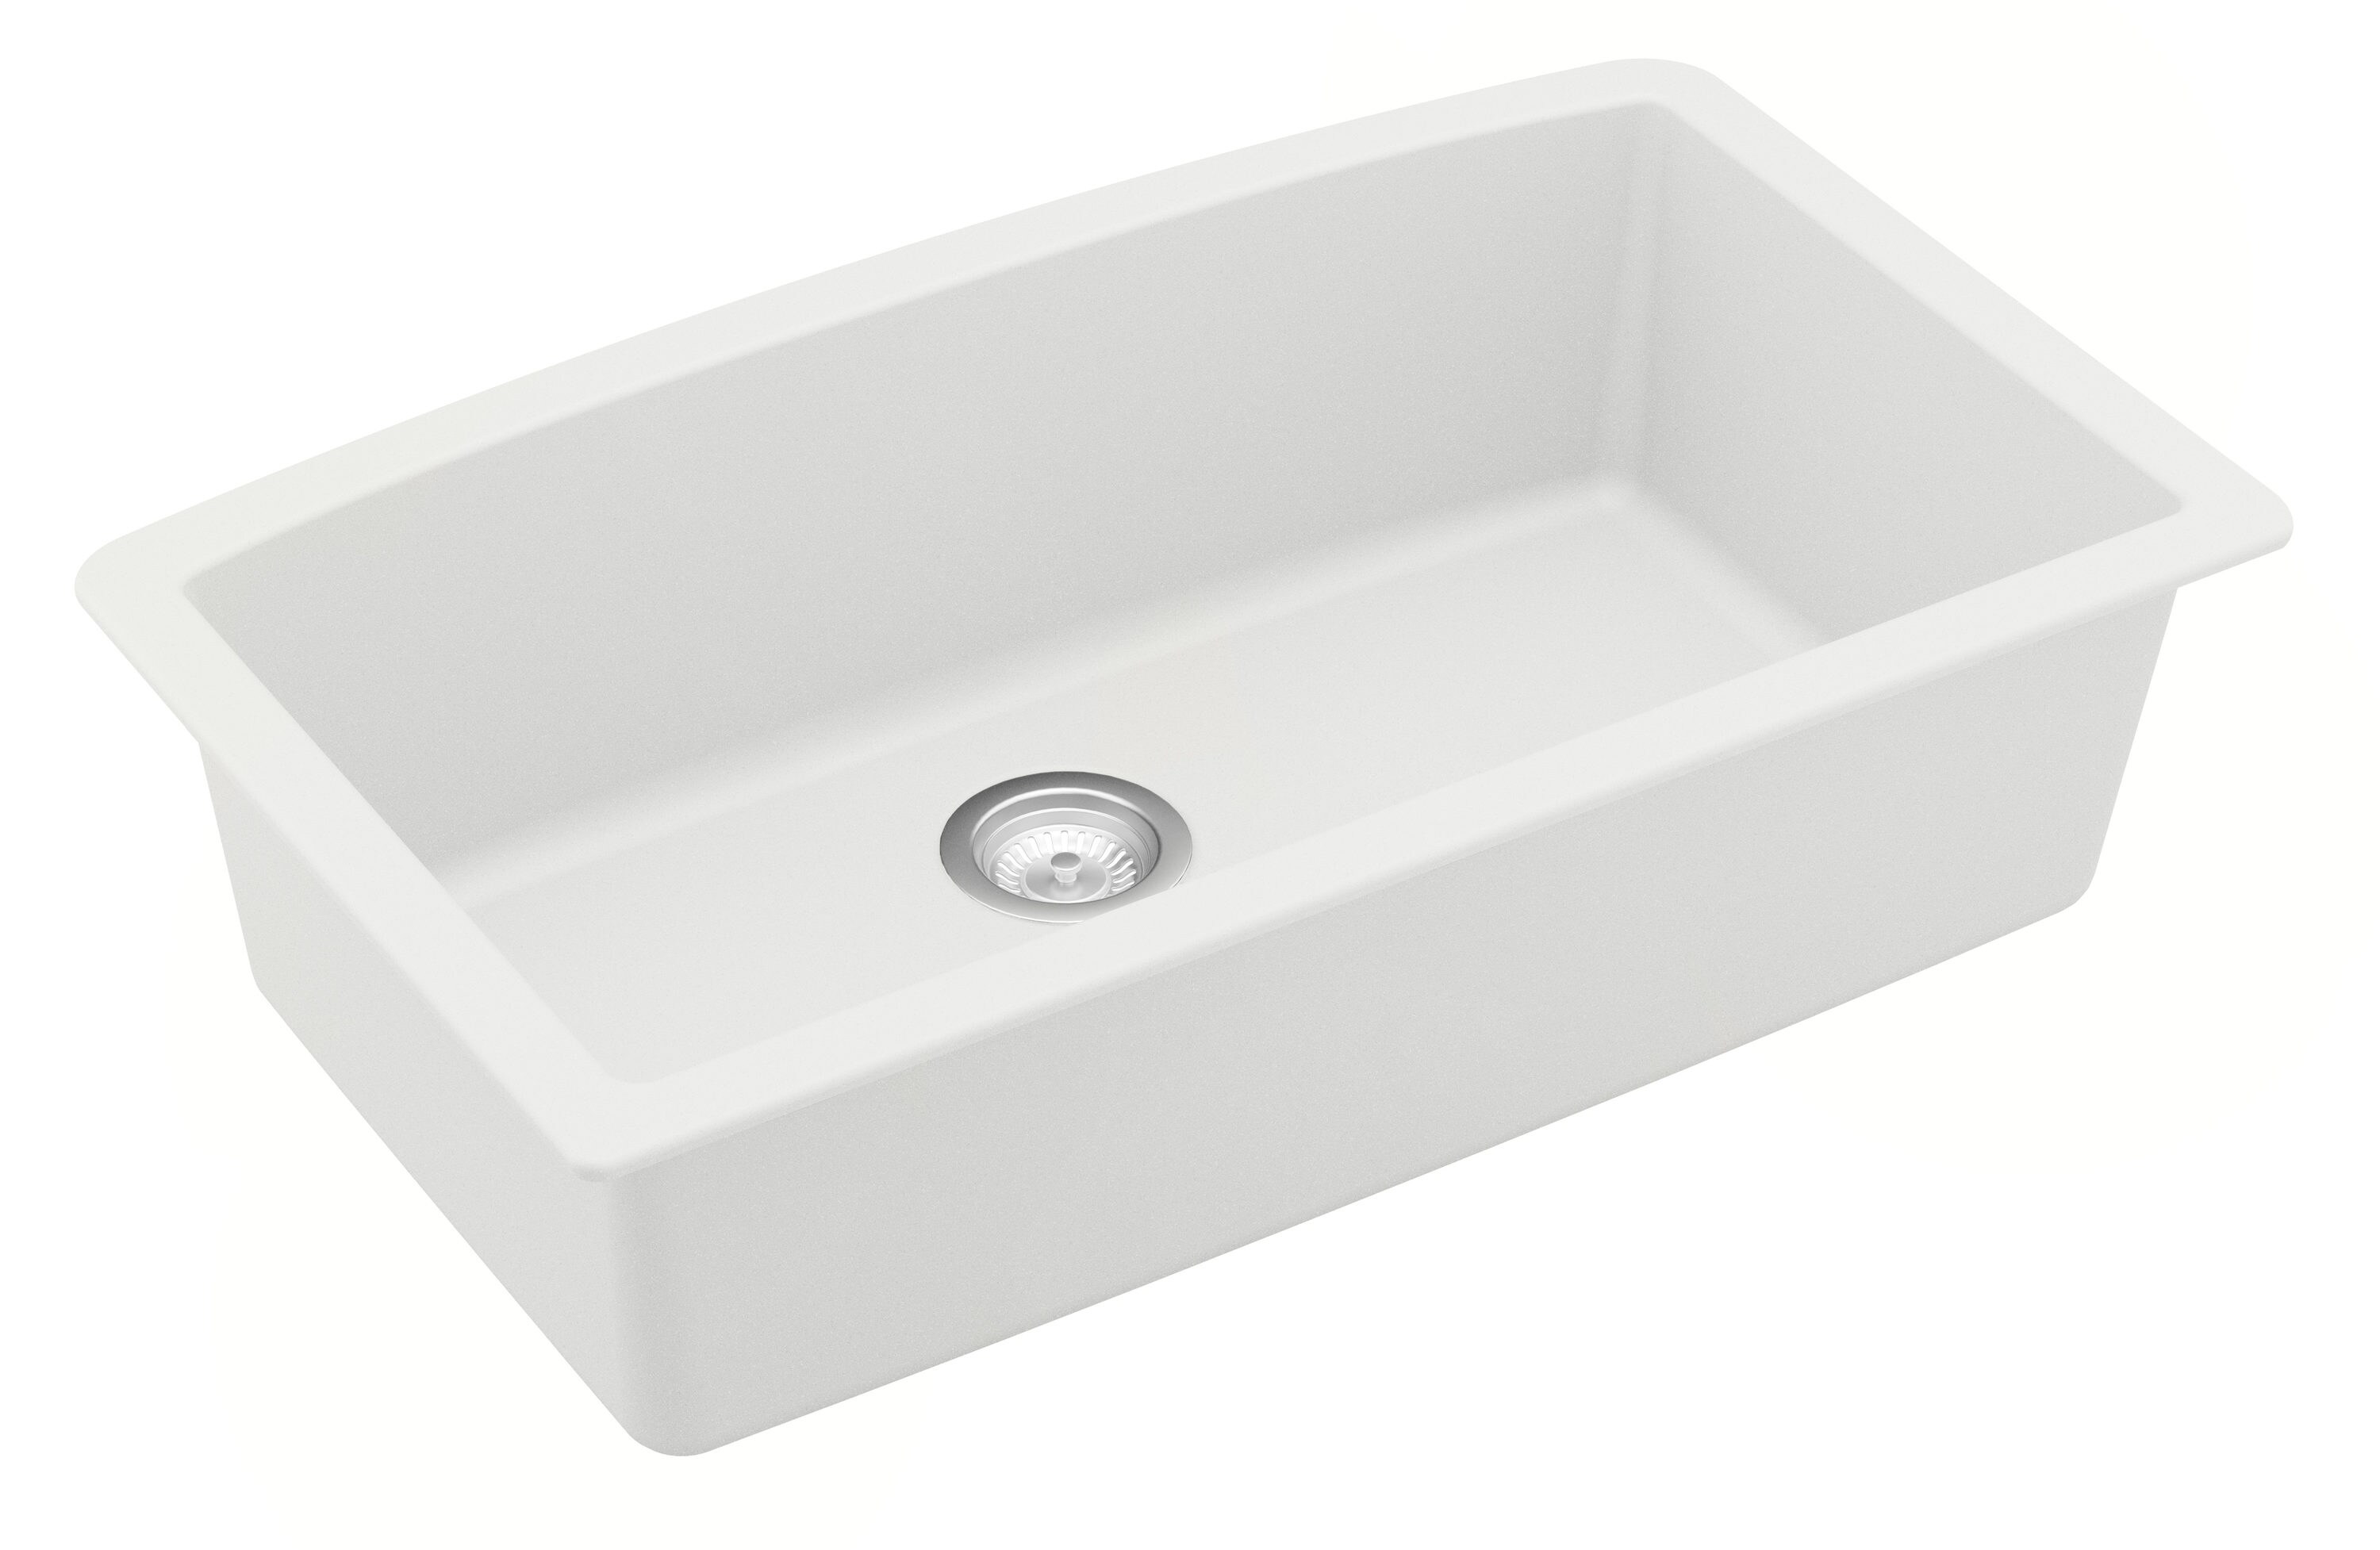 Karran Undermount 32-in x 19.5-in White Quartz Single Bowl Kitchen Sink ...